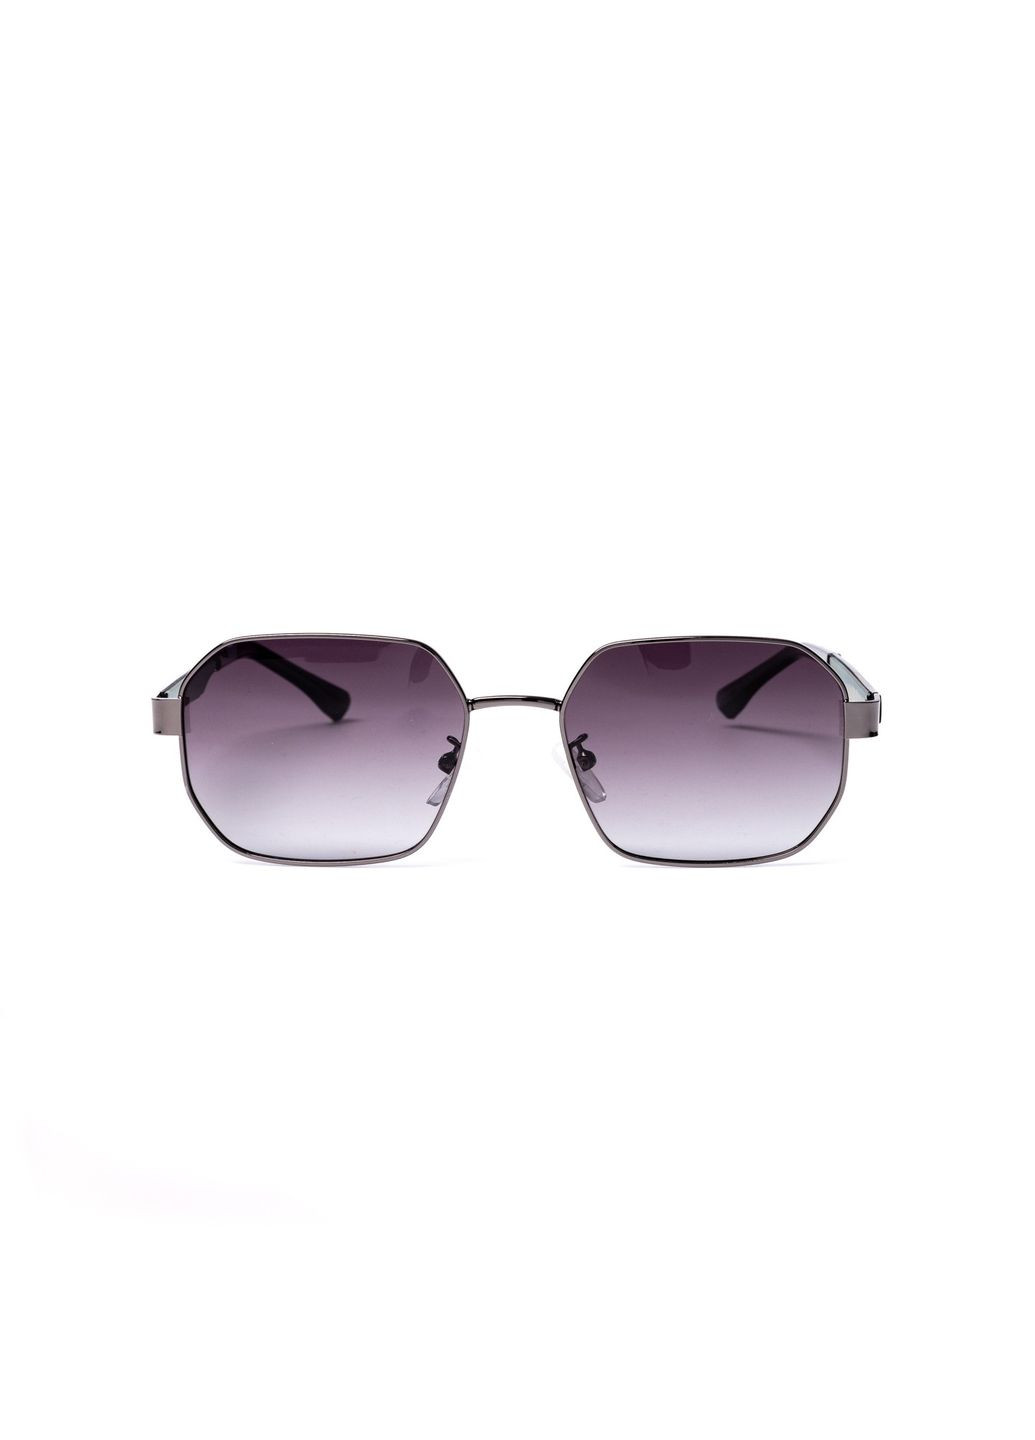 Солнцезащитные очки с поляризацией Фэшн-классика мужские 382-435 LuckyLOOK 382-435м (289359493)